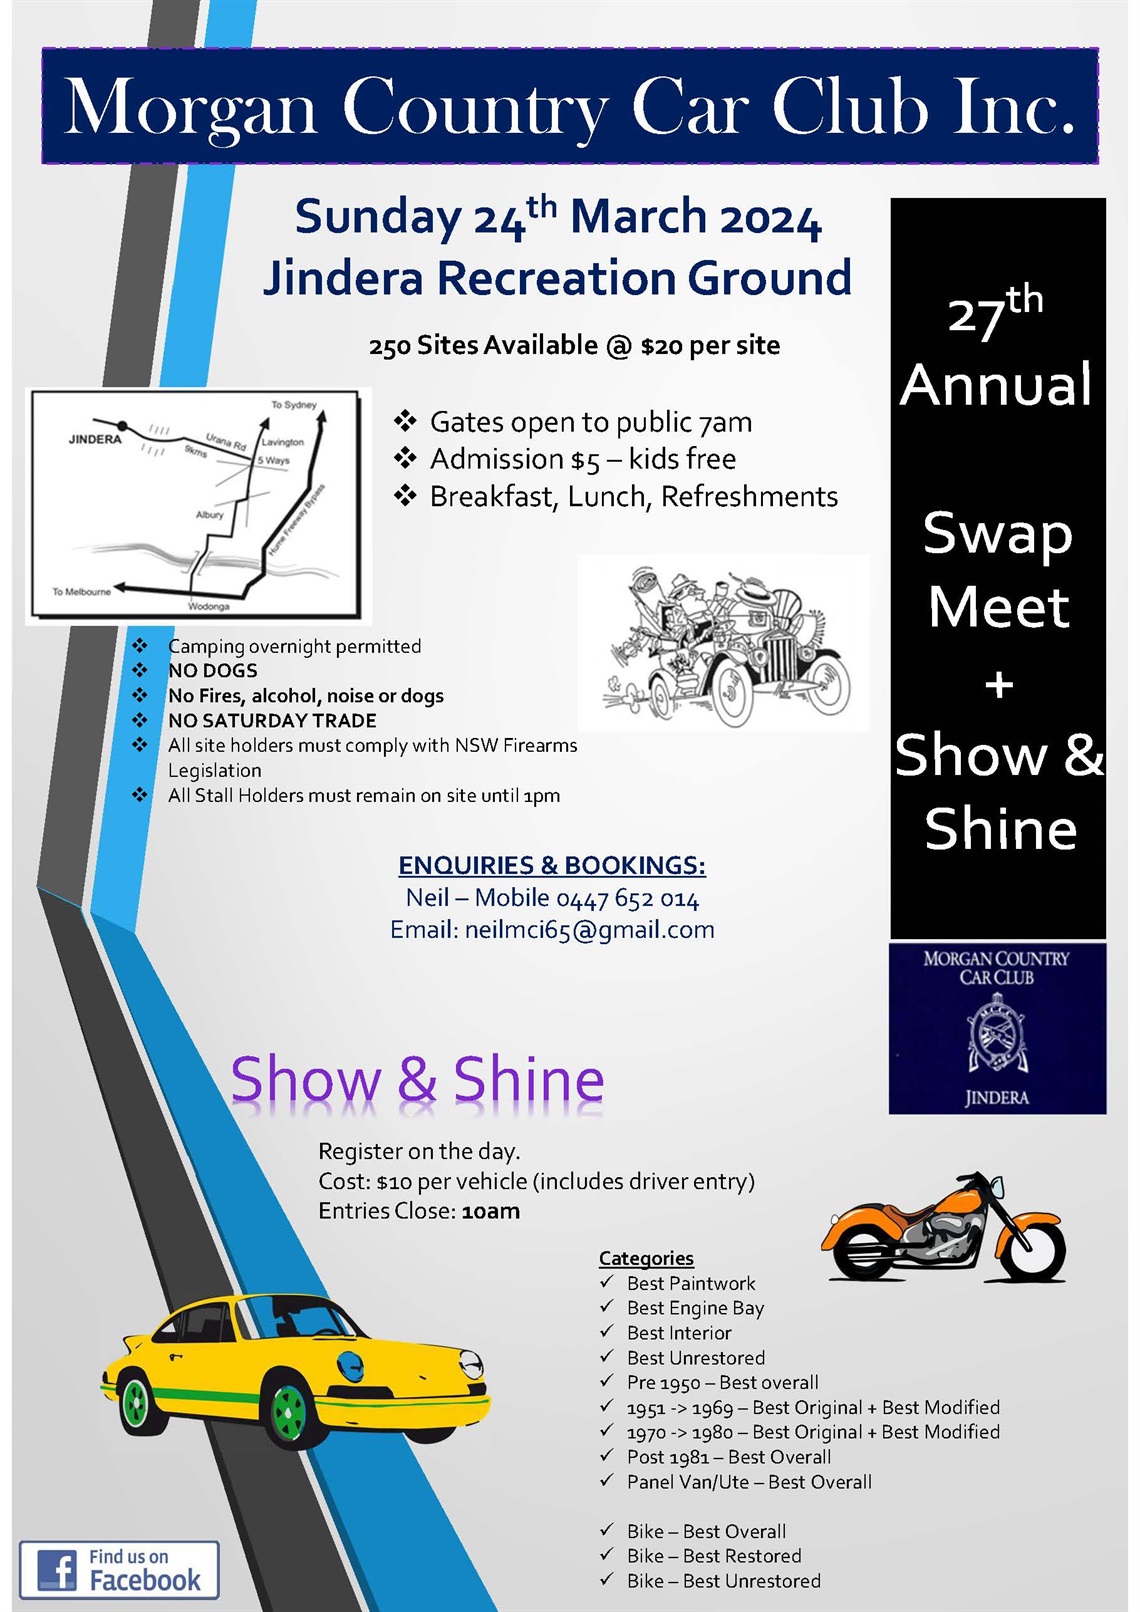 MCCC-Jindera-Swap-Meet-2024.jpg